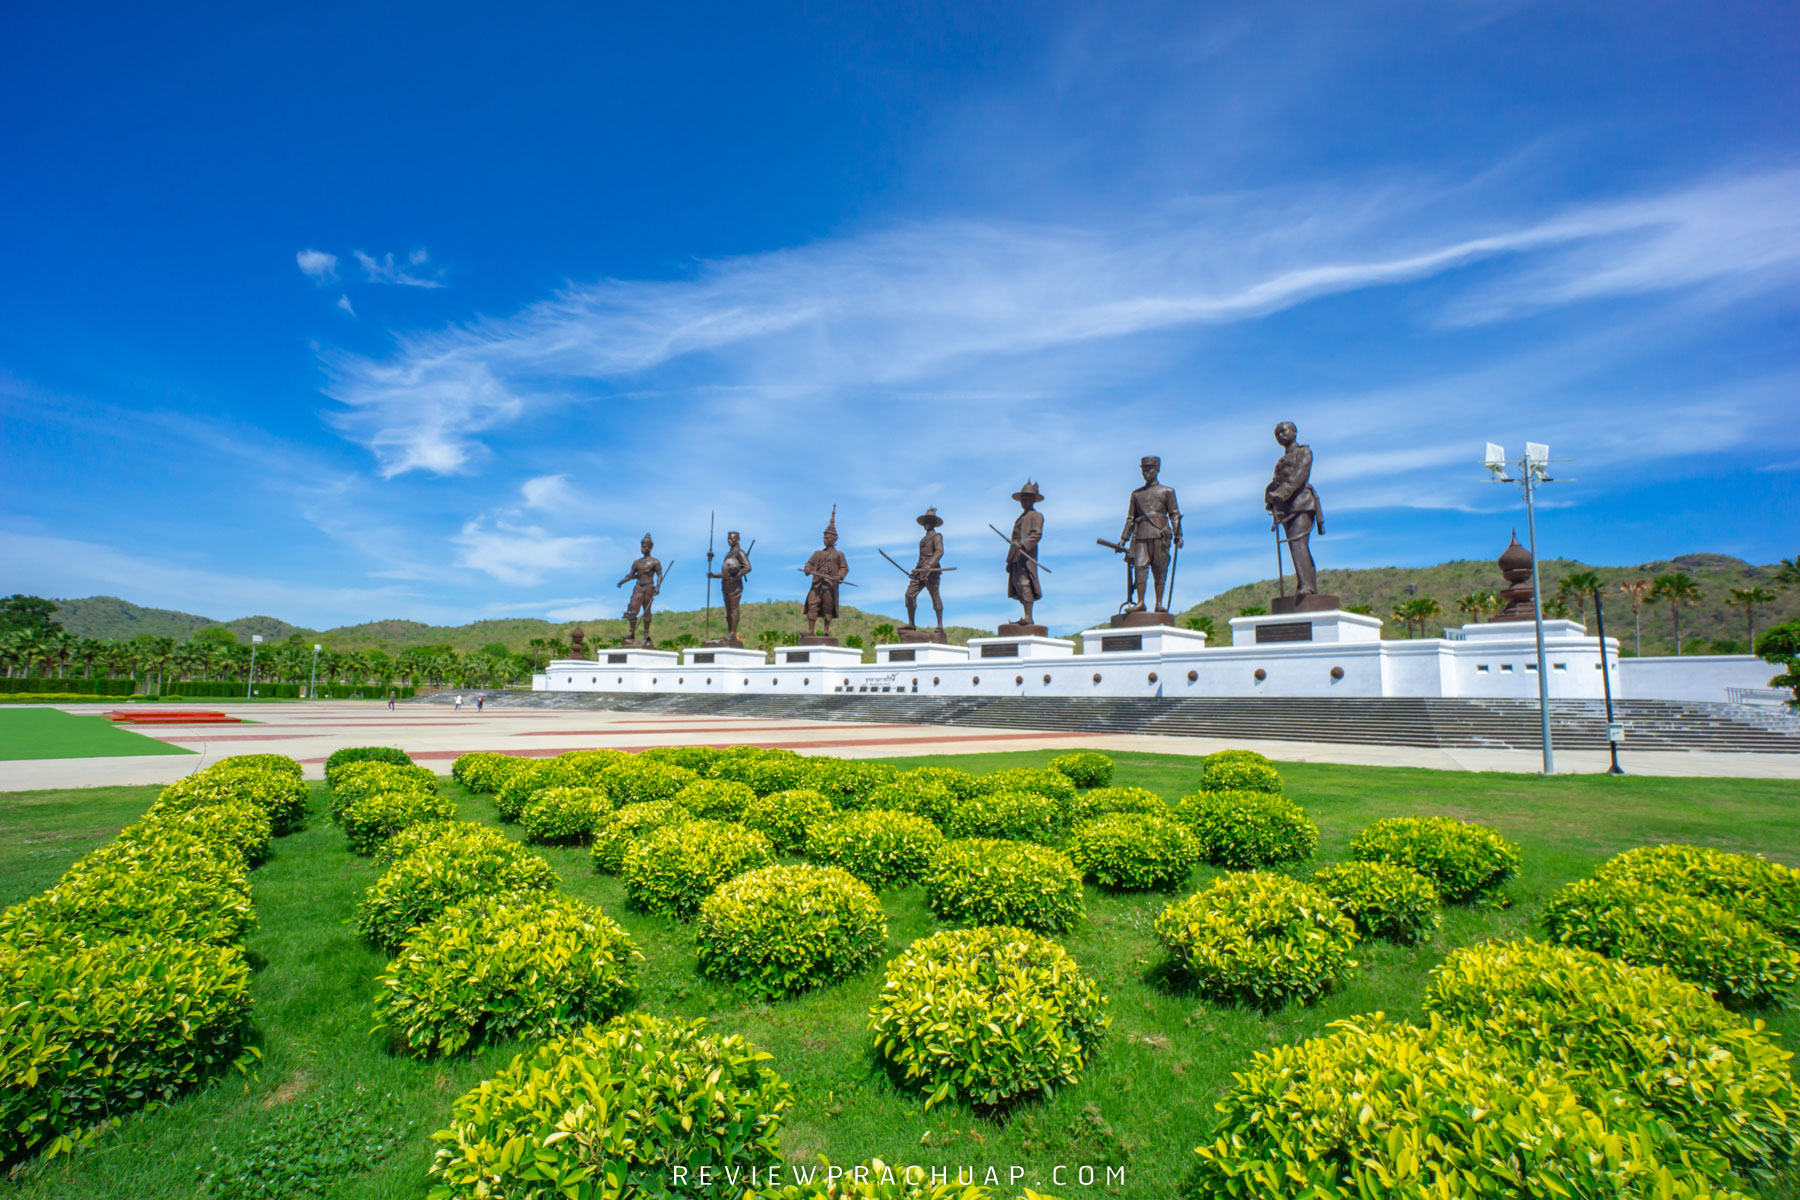 อุทยานราชภักดิ์ อุทยานประวัติศาสตร์ชาติไทยแวะไปชมประติมากรรมรูปปั้นของพระมหากษัตริย์พระองค์ต่างๆกันได้เลย